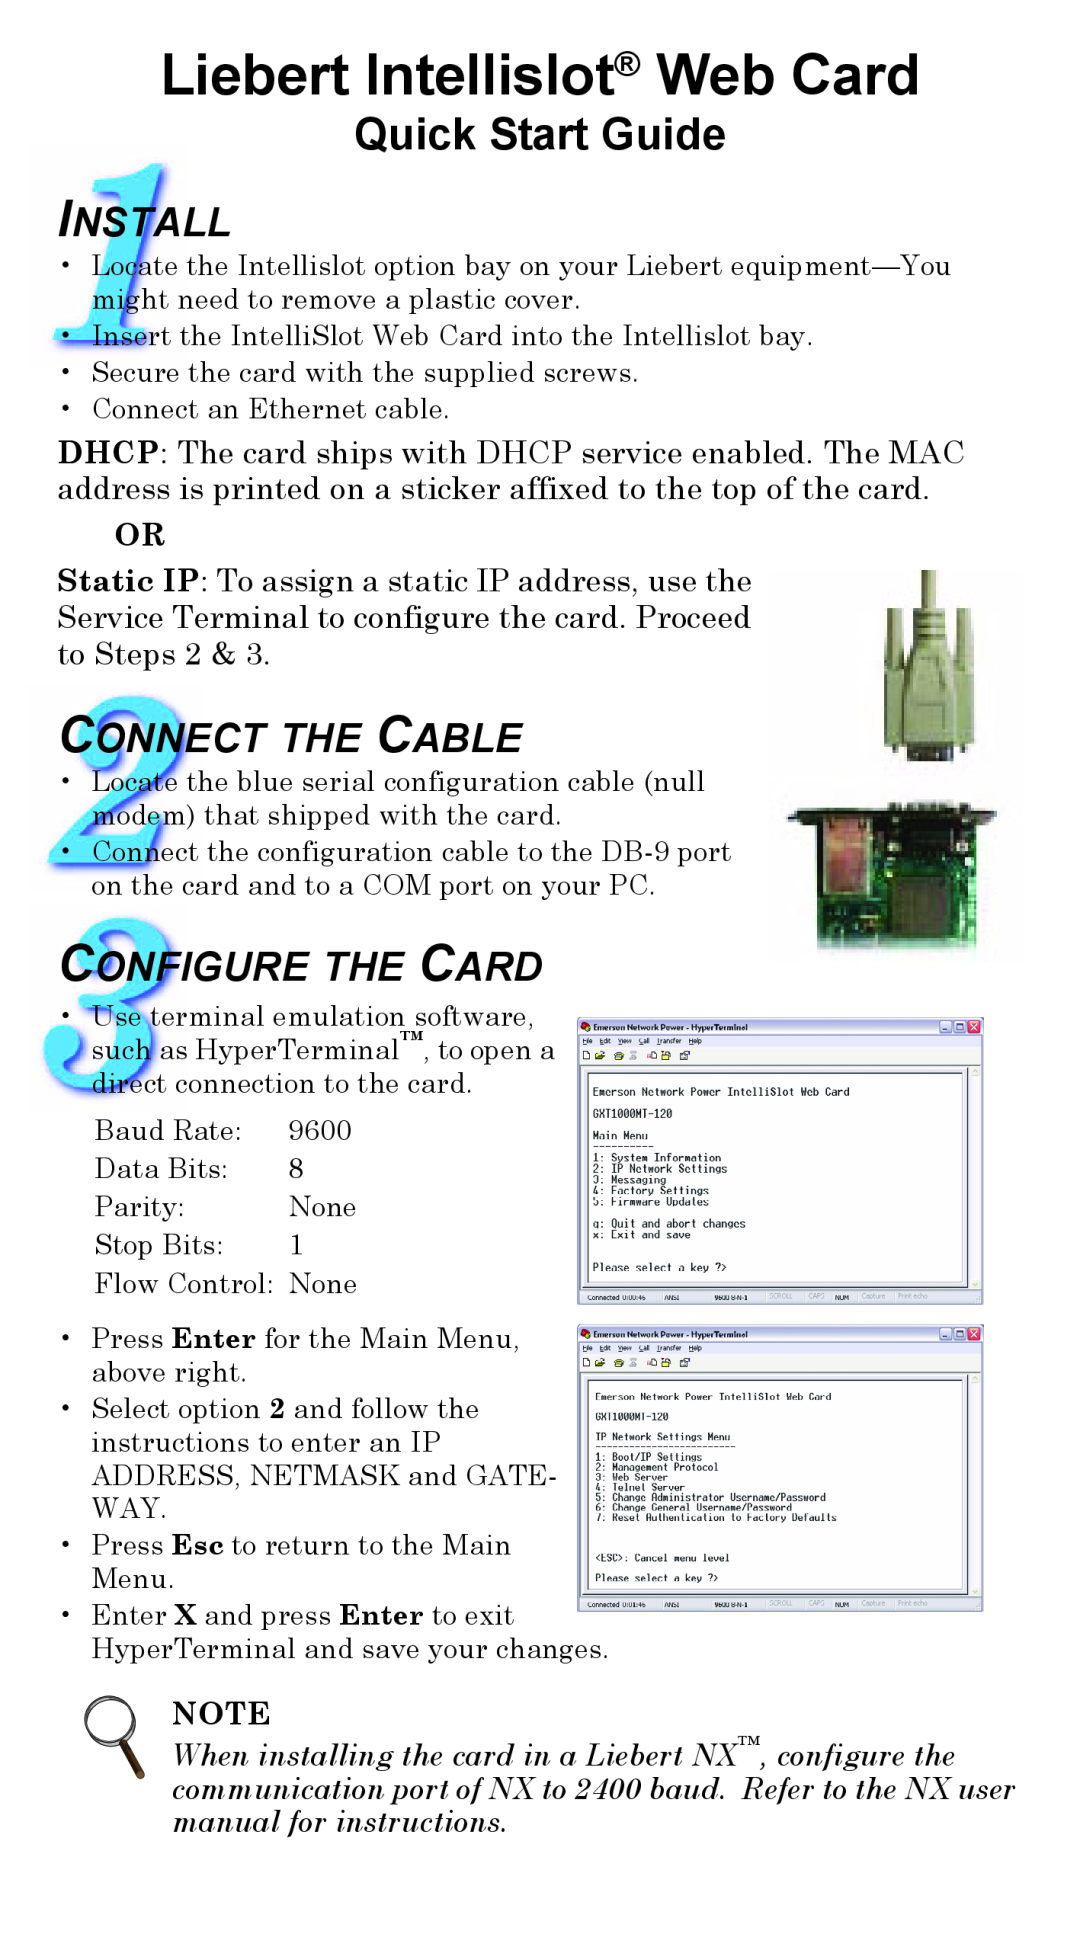 Liebert quick start Liebert Intellislot Web Card, Quick Start Guide, Install, Connect The Cable, Configure The Card 